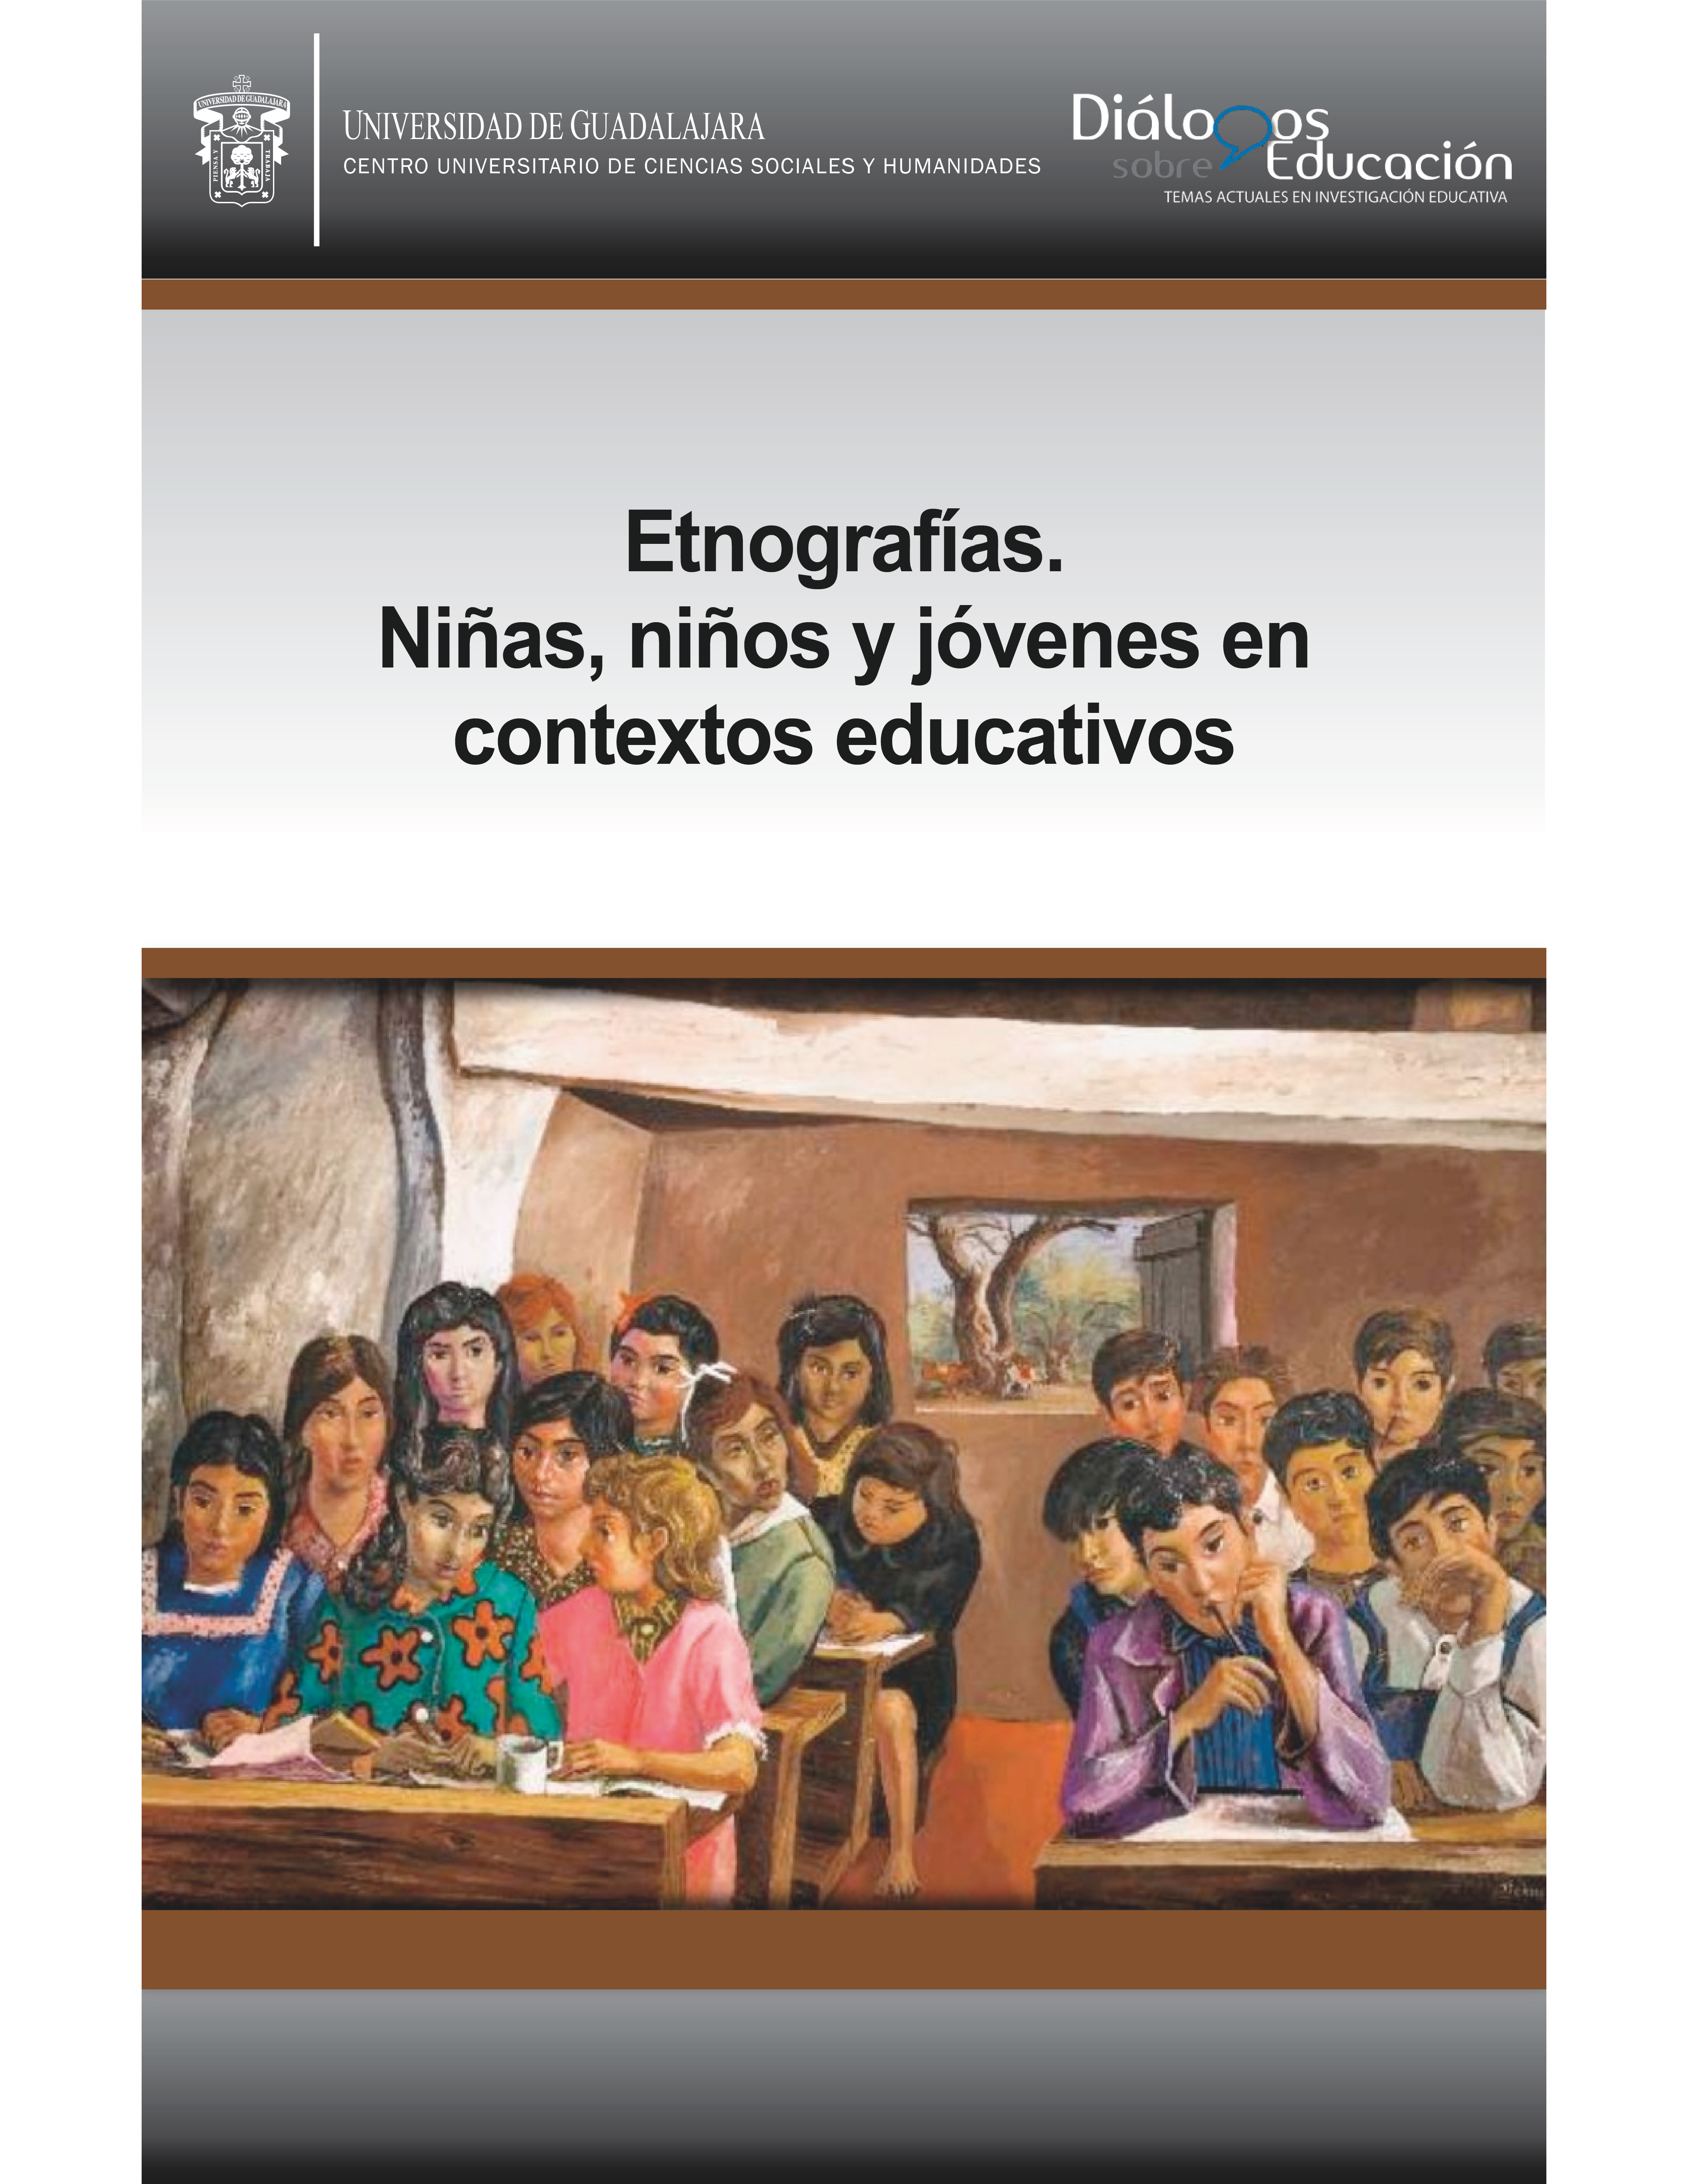 					Ver Núm. 20 (11): Etnografías. Niñas, niños y jóvenes en contextos educativos. Enero-junio 2020
				